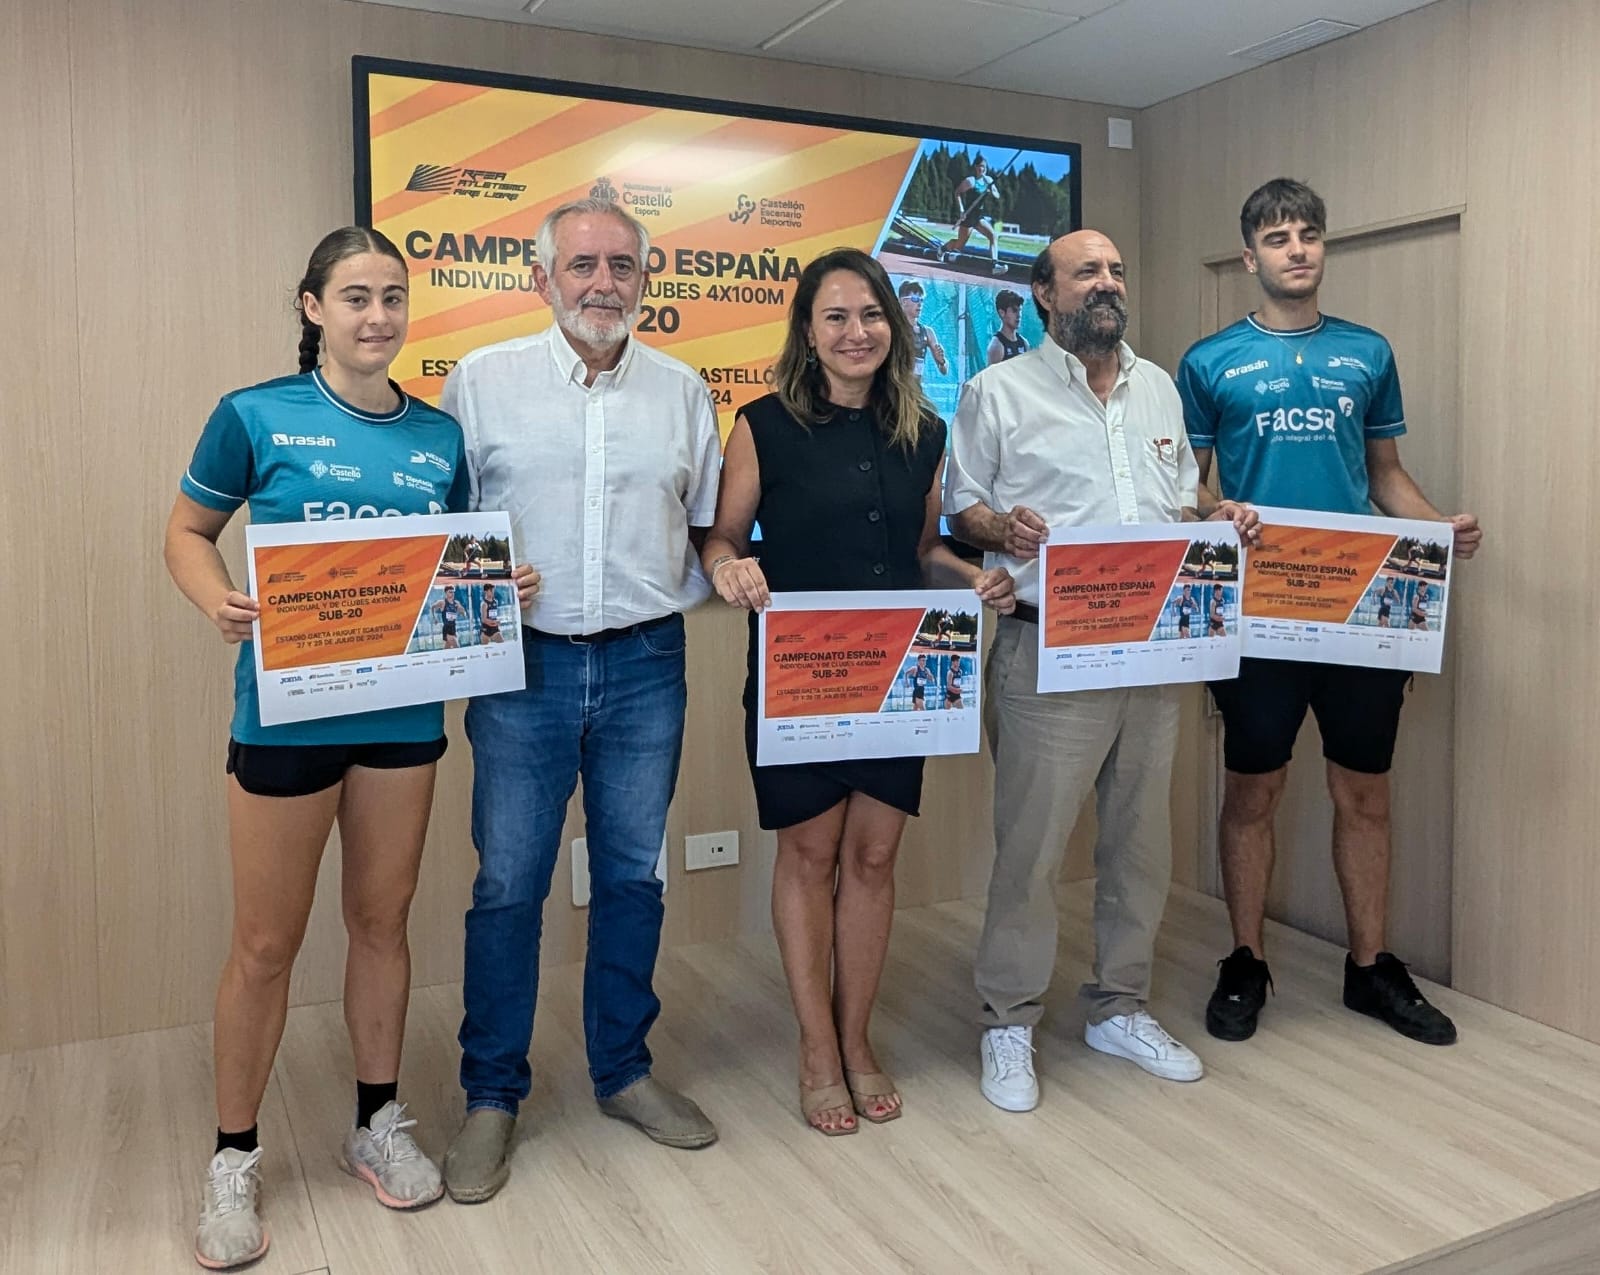 Castelló atraurà a més de 4.000 persones amb la celebració del LXXI Campionat d'Espanya d'Atletisme Sub 20 els dies 27 i 28 de juliol